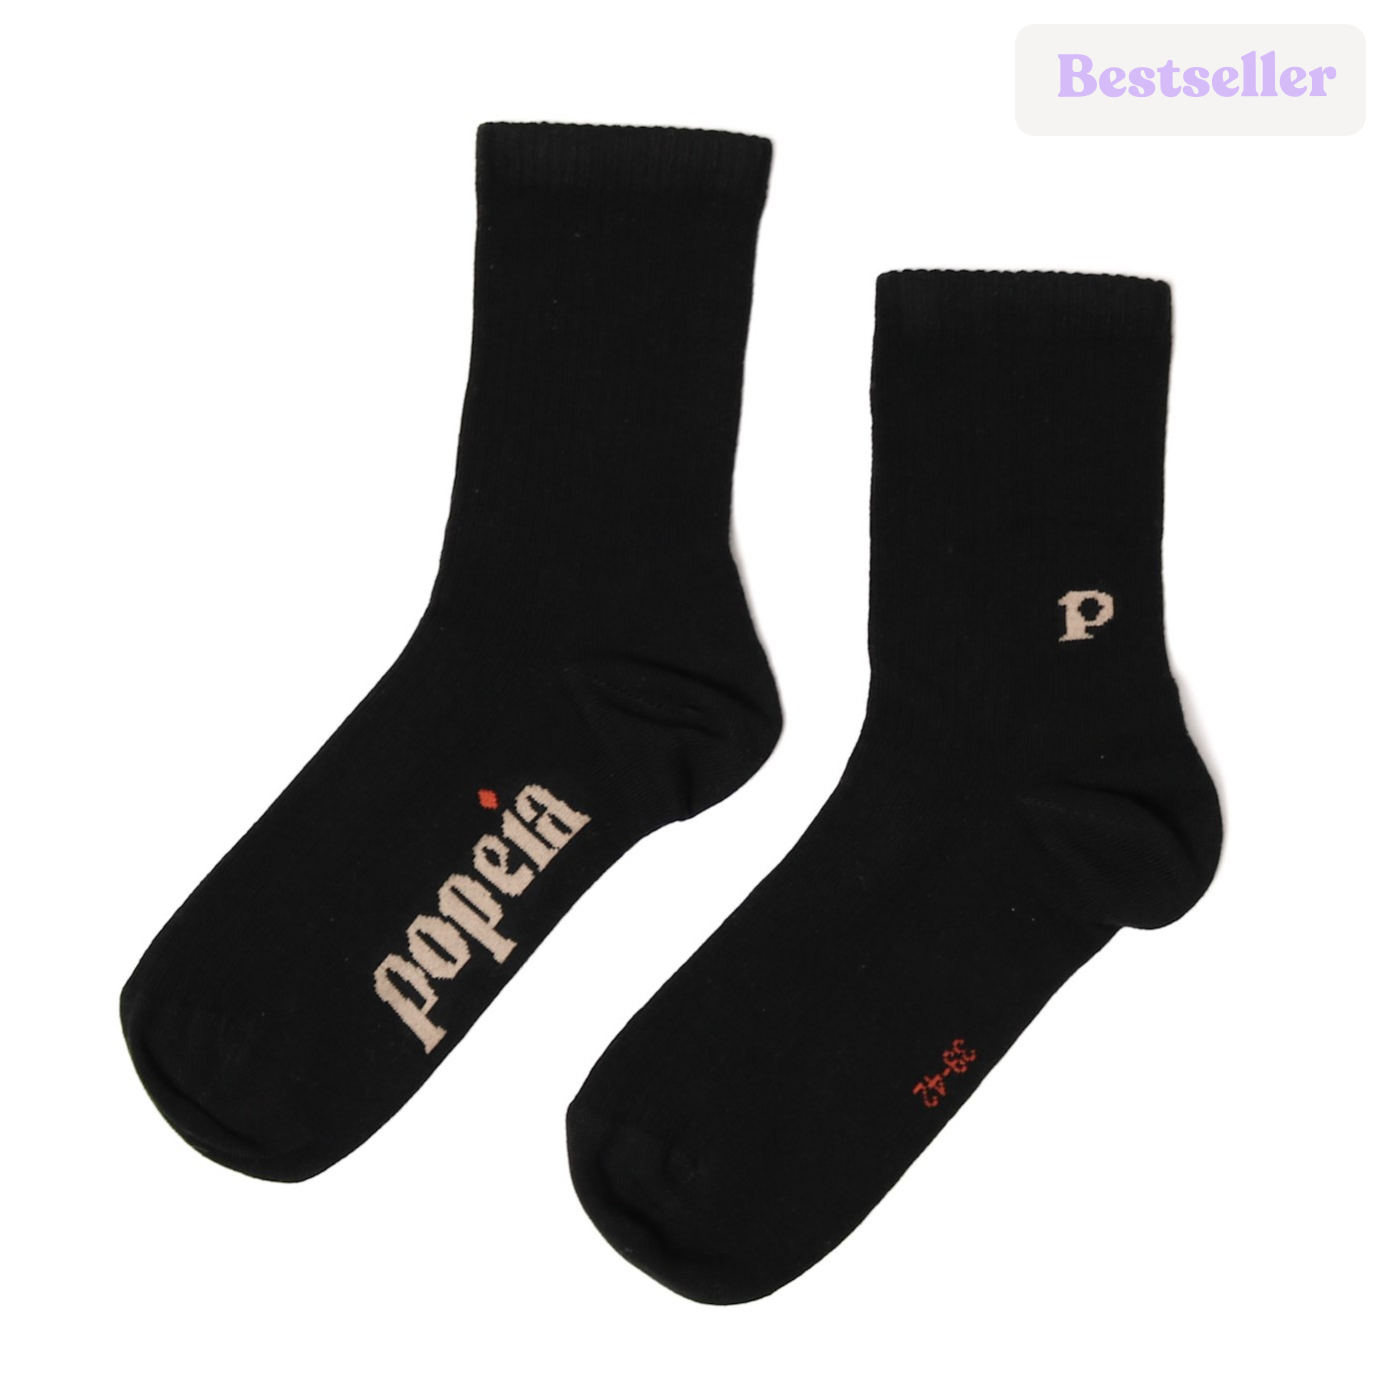 The Casual - Socken aus Bio-Baumwolle